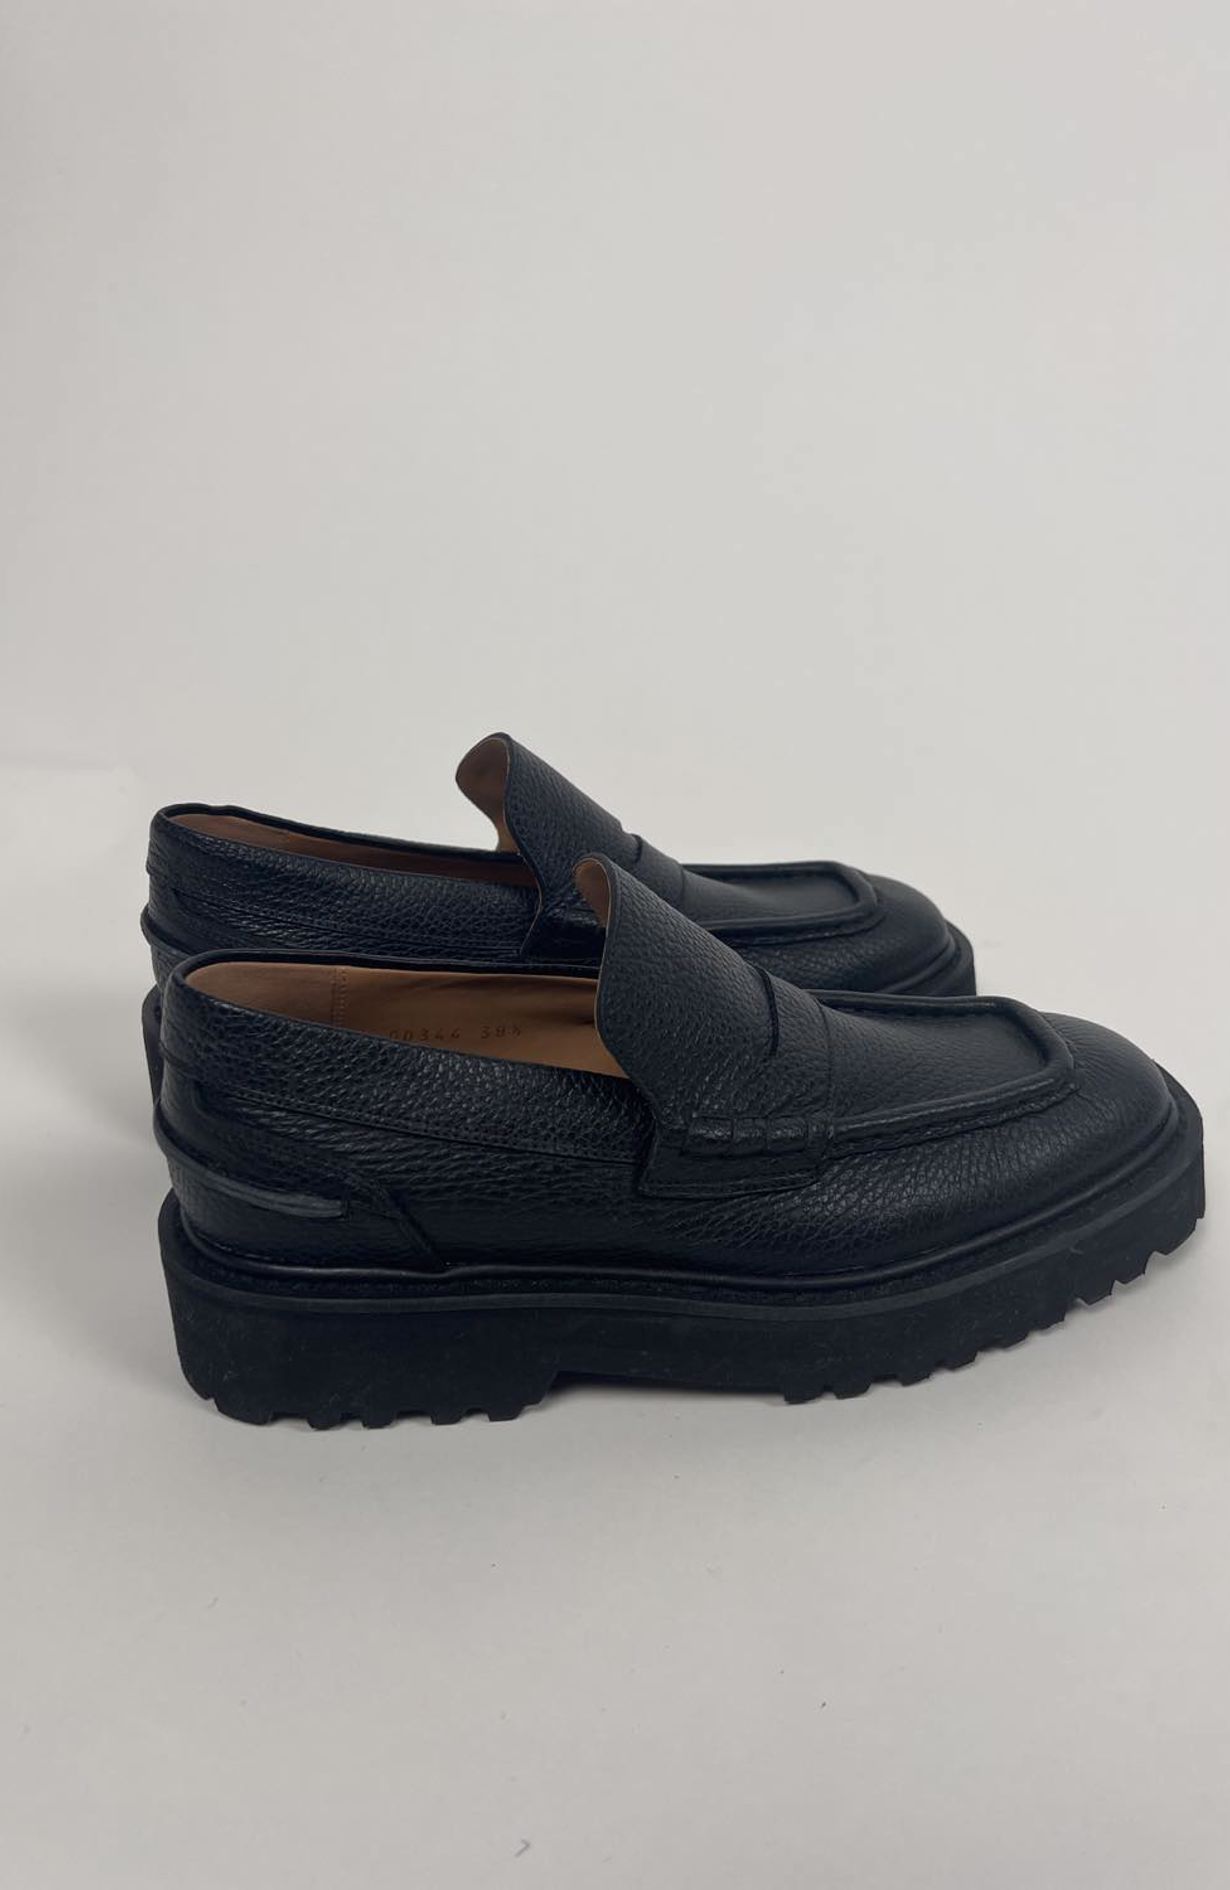 Dries Van Noten Loafers Black Size 38.5